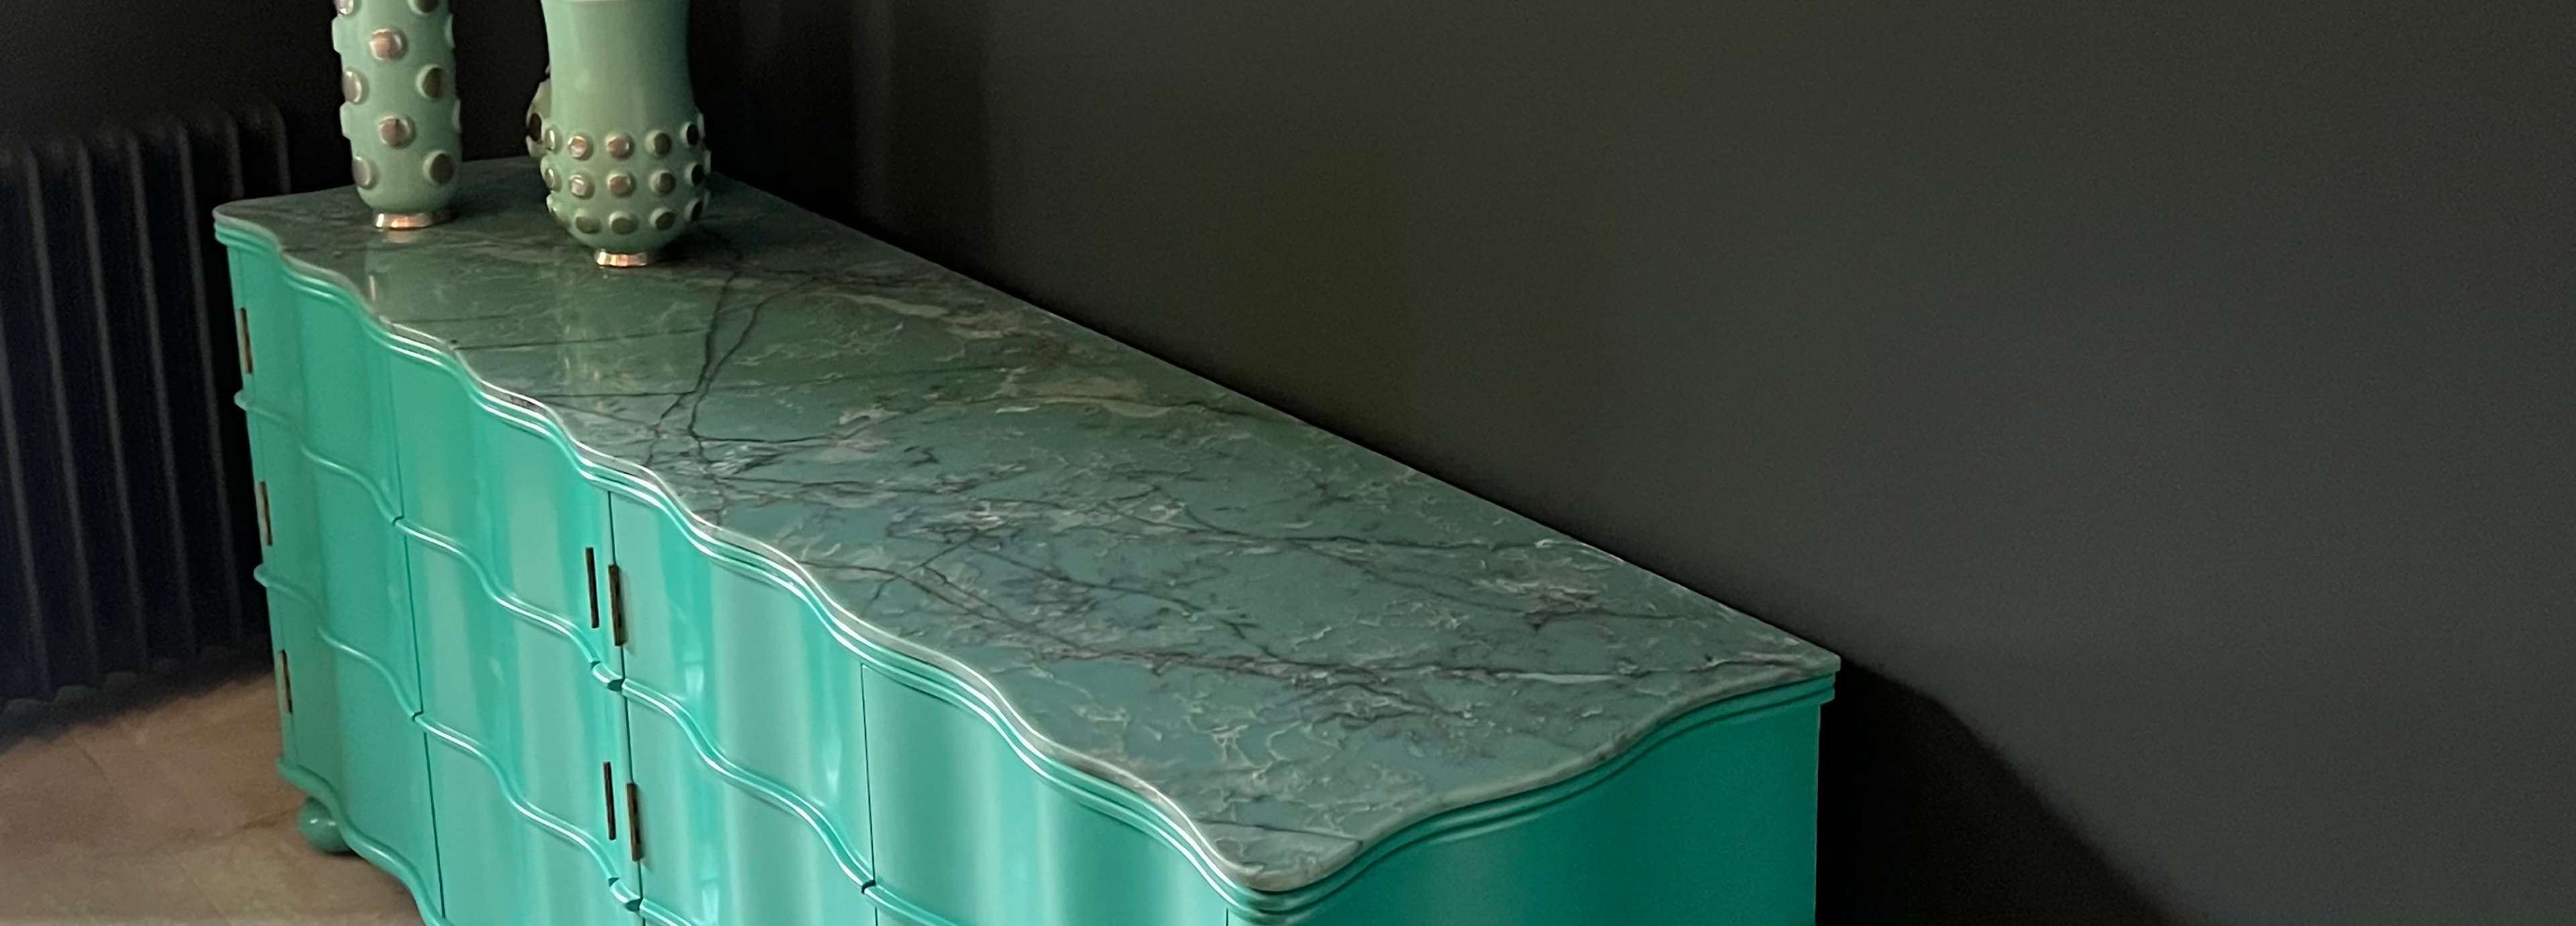 CRL Quartz Cristallo Verde, Green Quartz furniture top